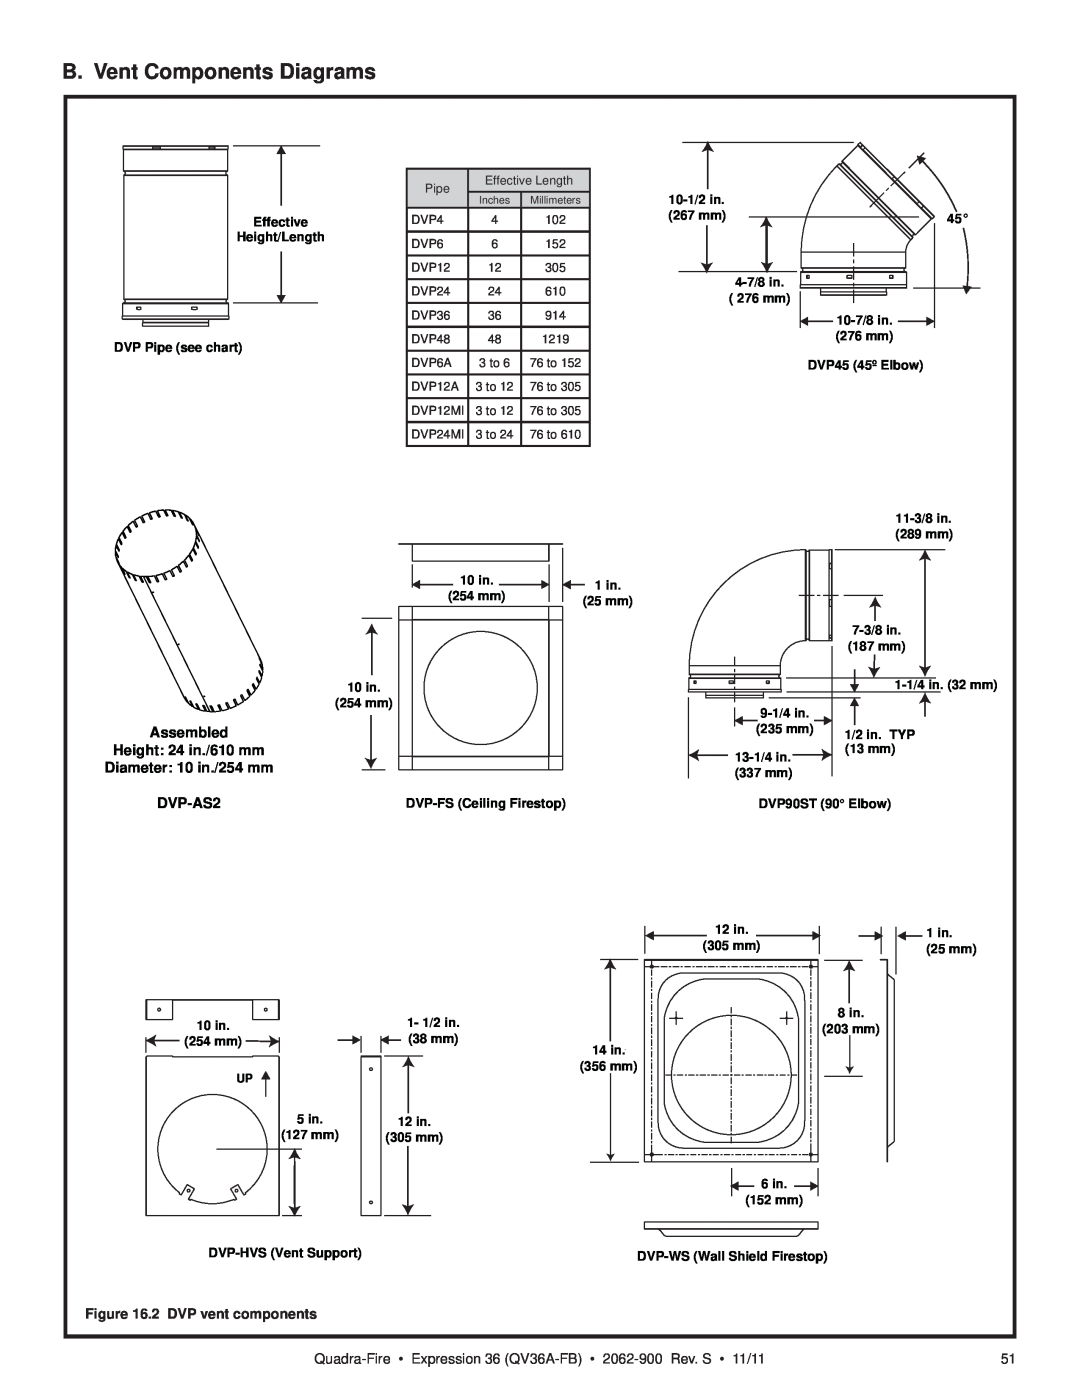 Quadra-Fire QV36A-FB B. Vent Components Diagrams, DVP-AS2, 2 DVP vent components, Assembled, Height: 24 in./610 mm 